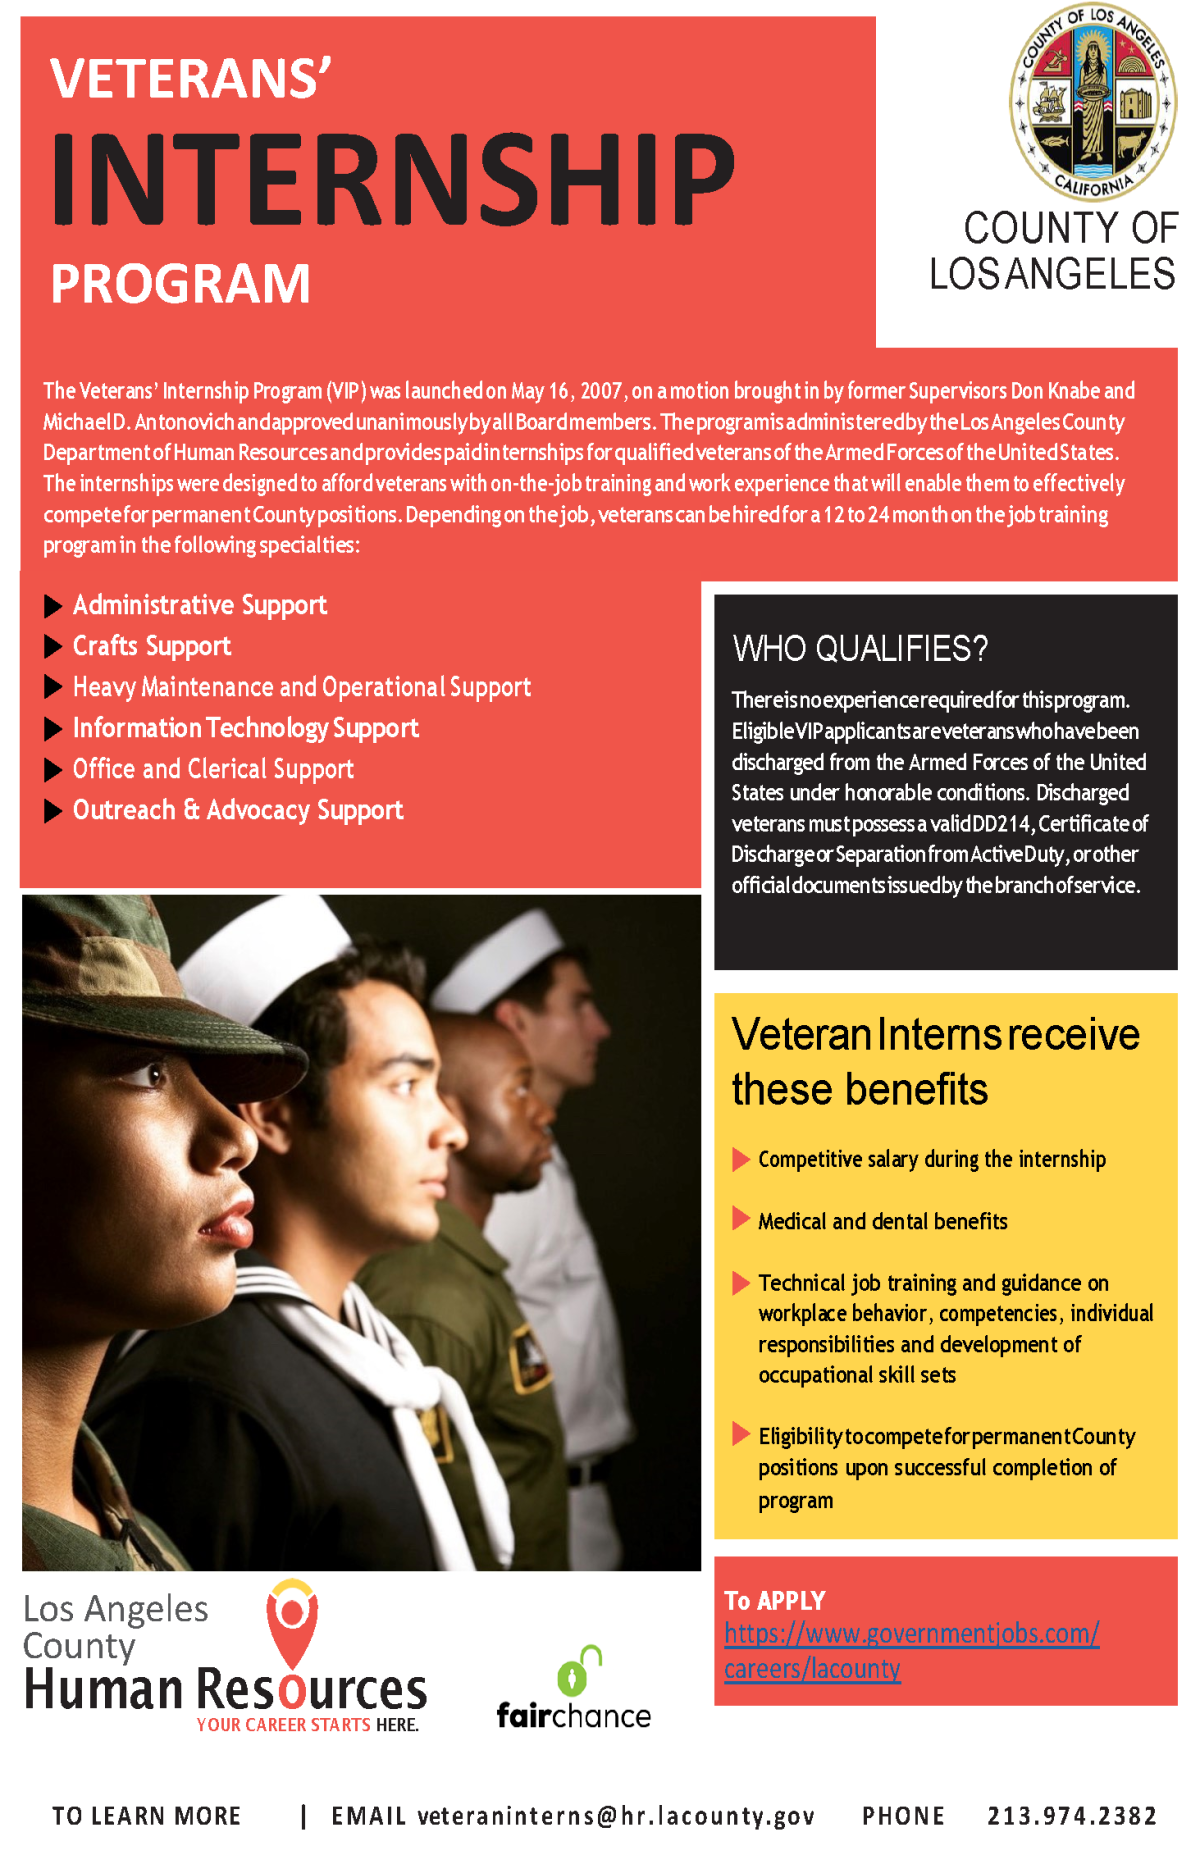 Veterans' Internship Program